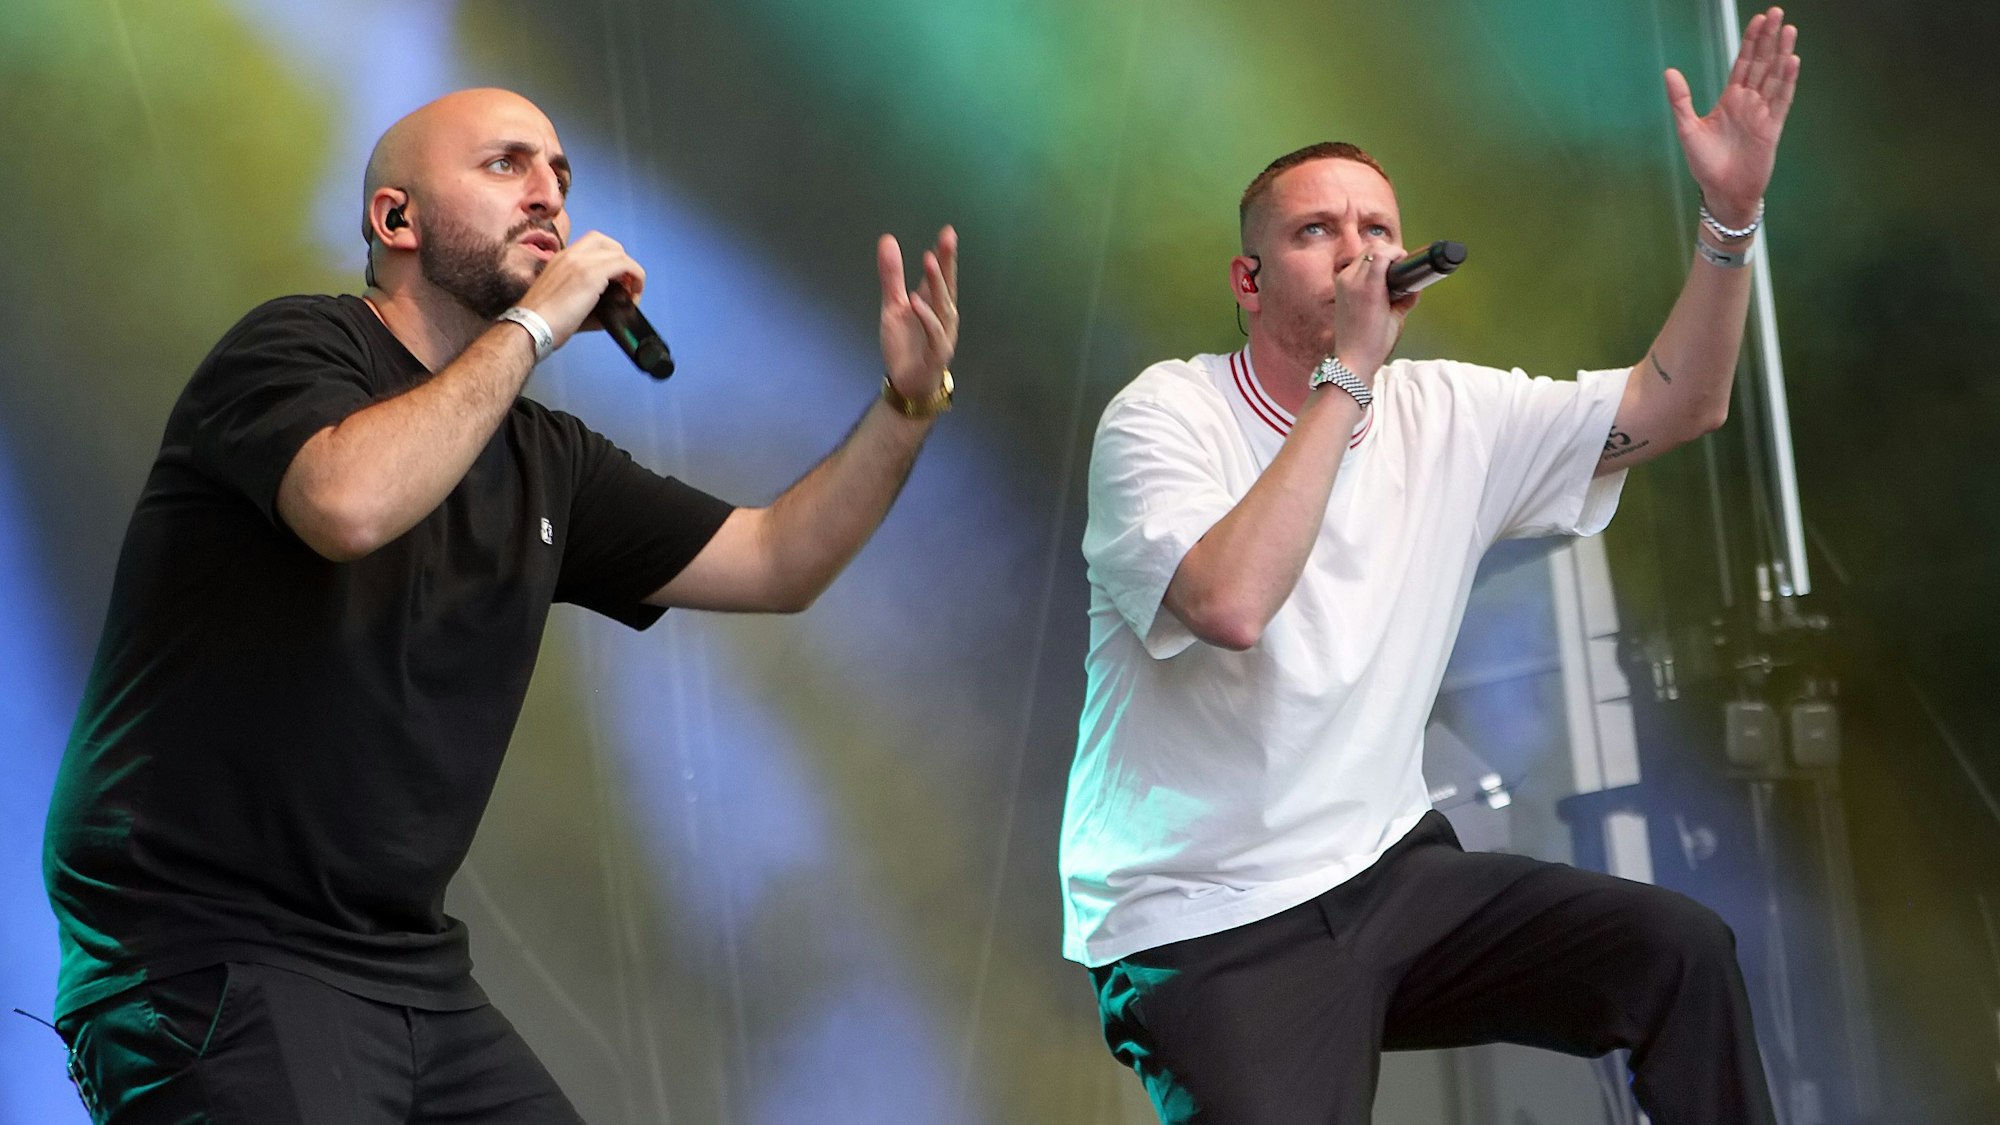 Zwei Männer mit Mikrophonen in der Hand stehen auf einer Bühne. Die linke Hand haben sie jeweils in die Luft gestreckt.